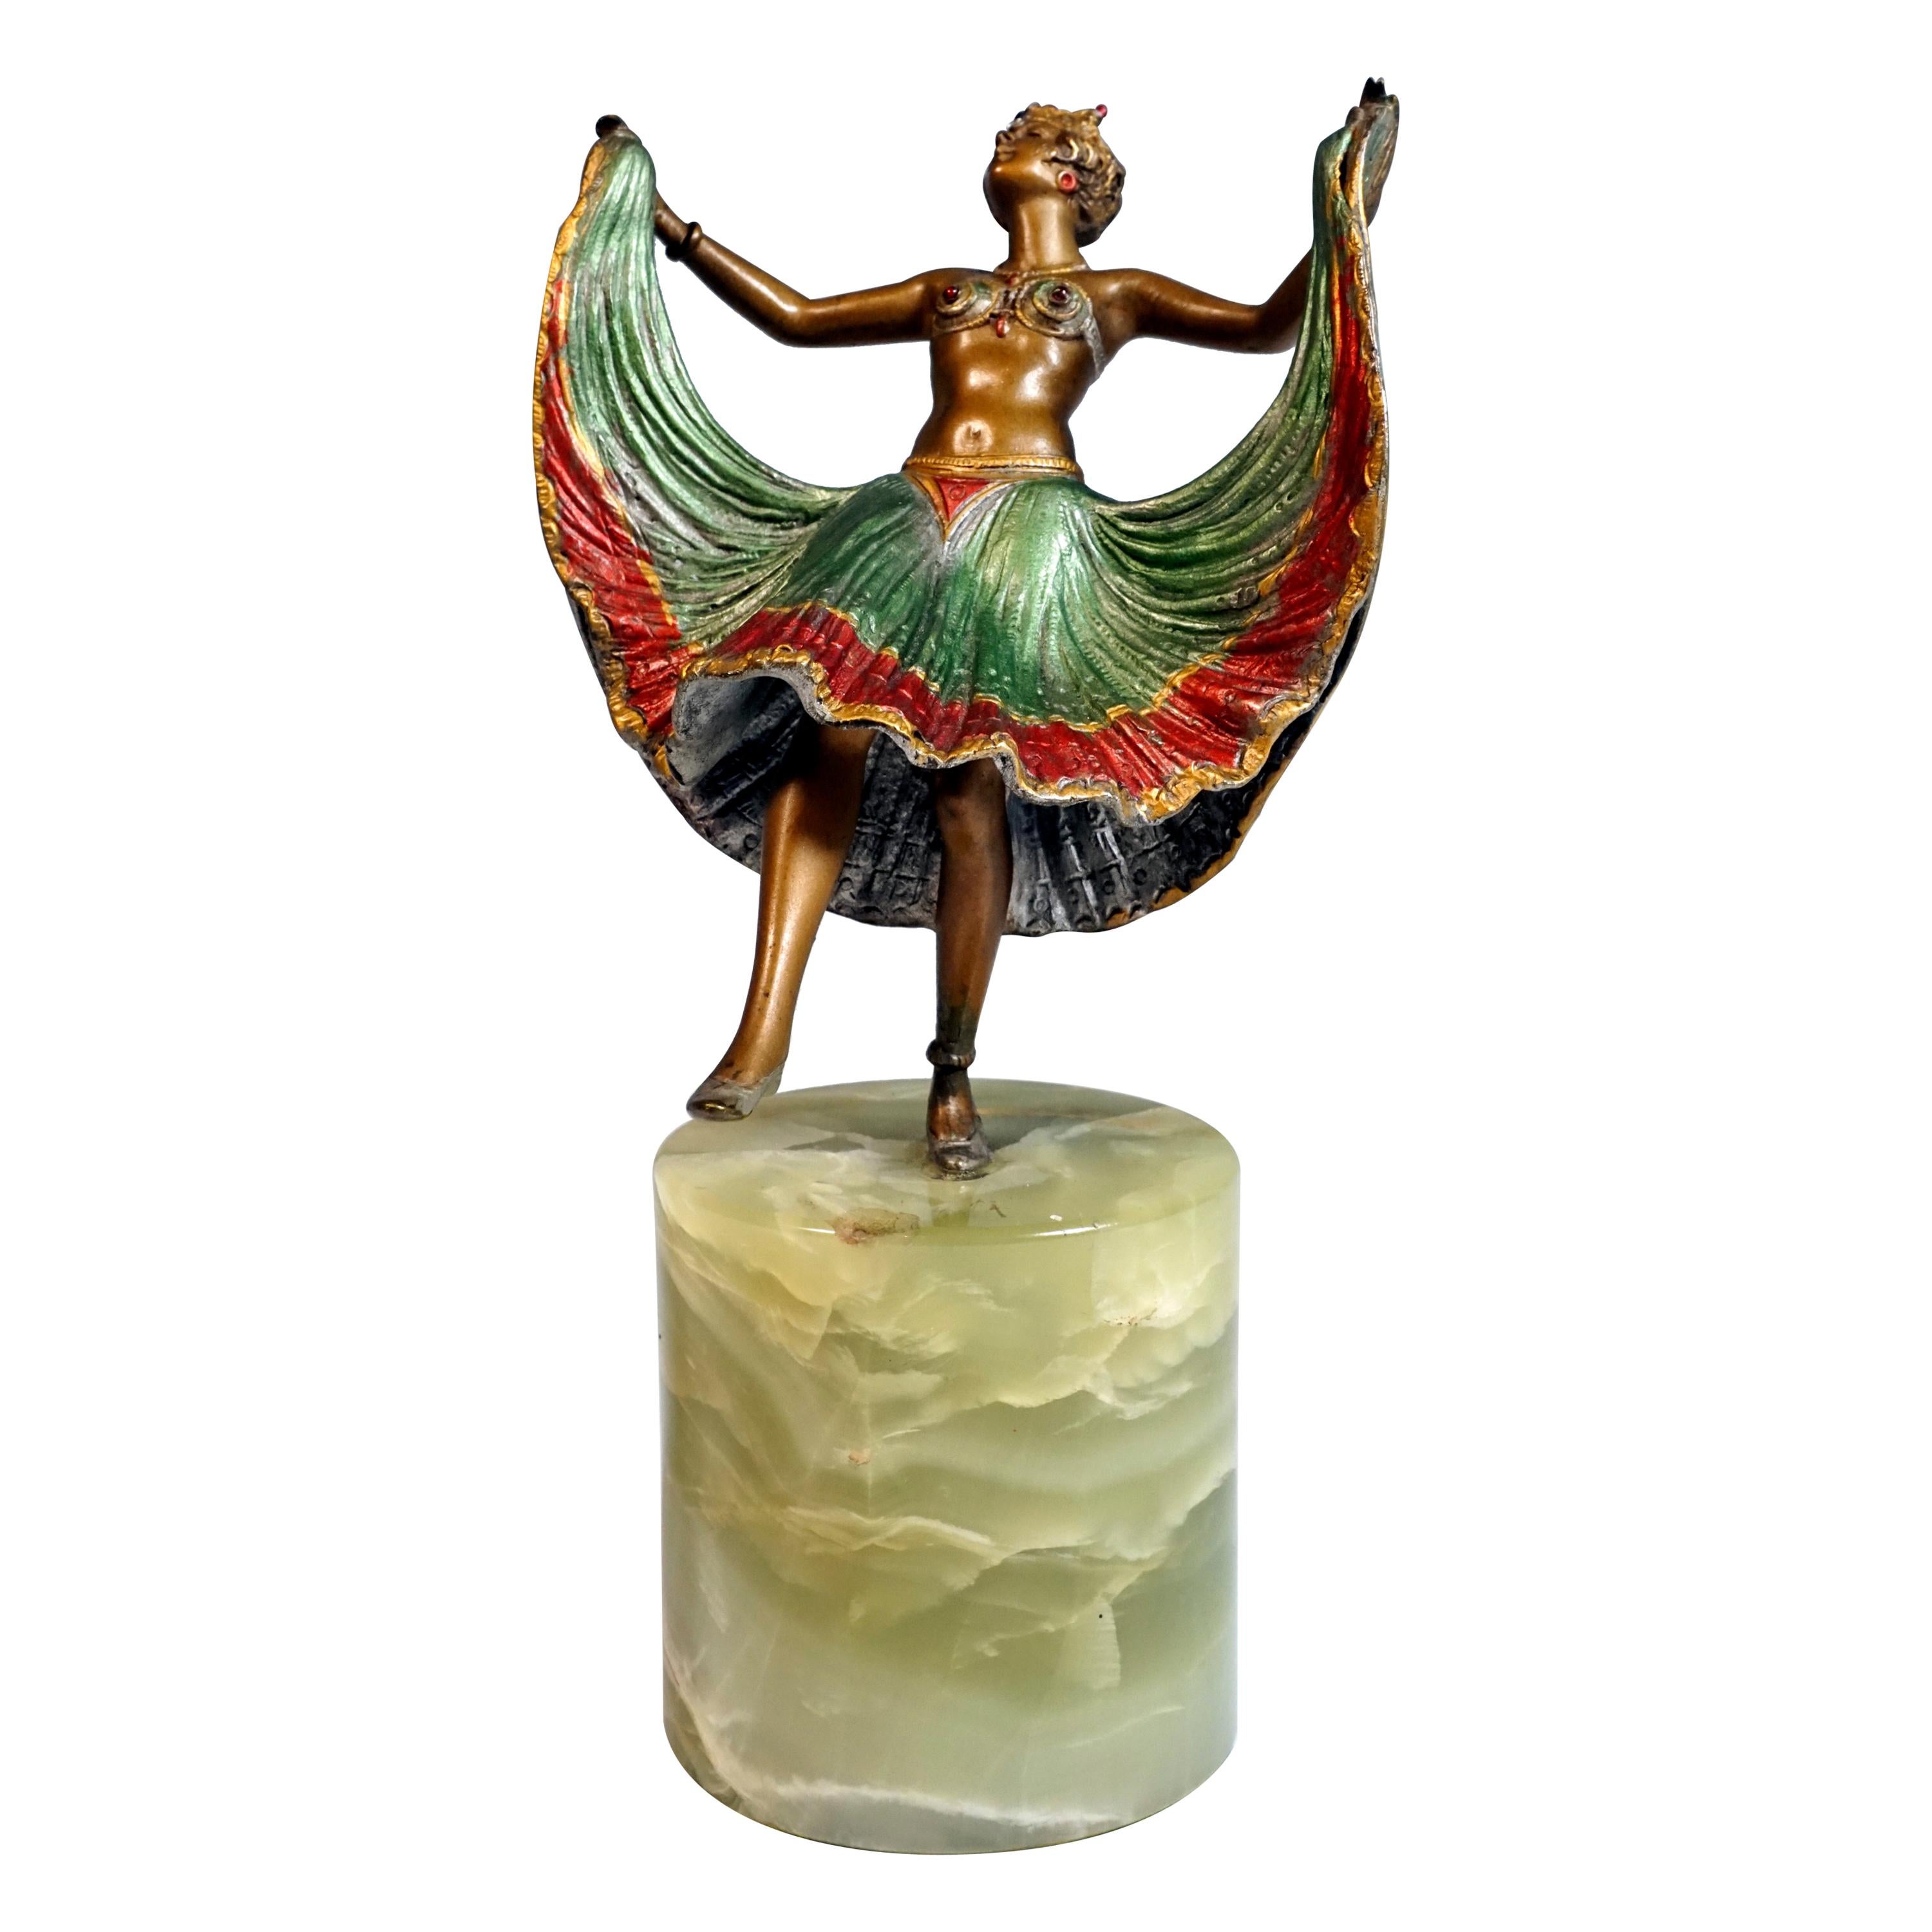 Viennese Bronze, Oriental Dancer on Onyx Base by Bergmann, around 1900